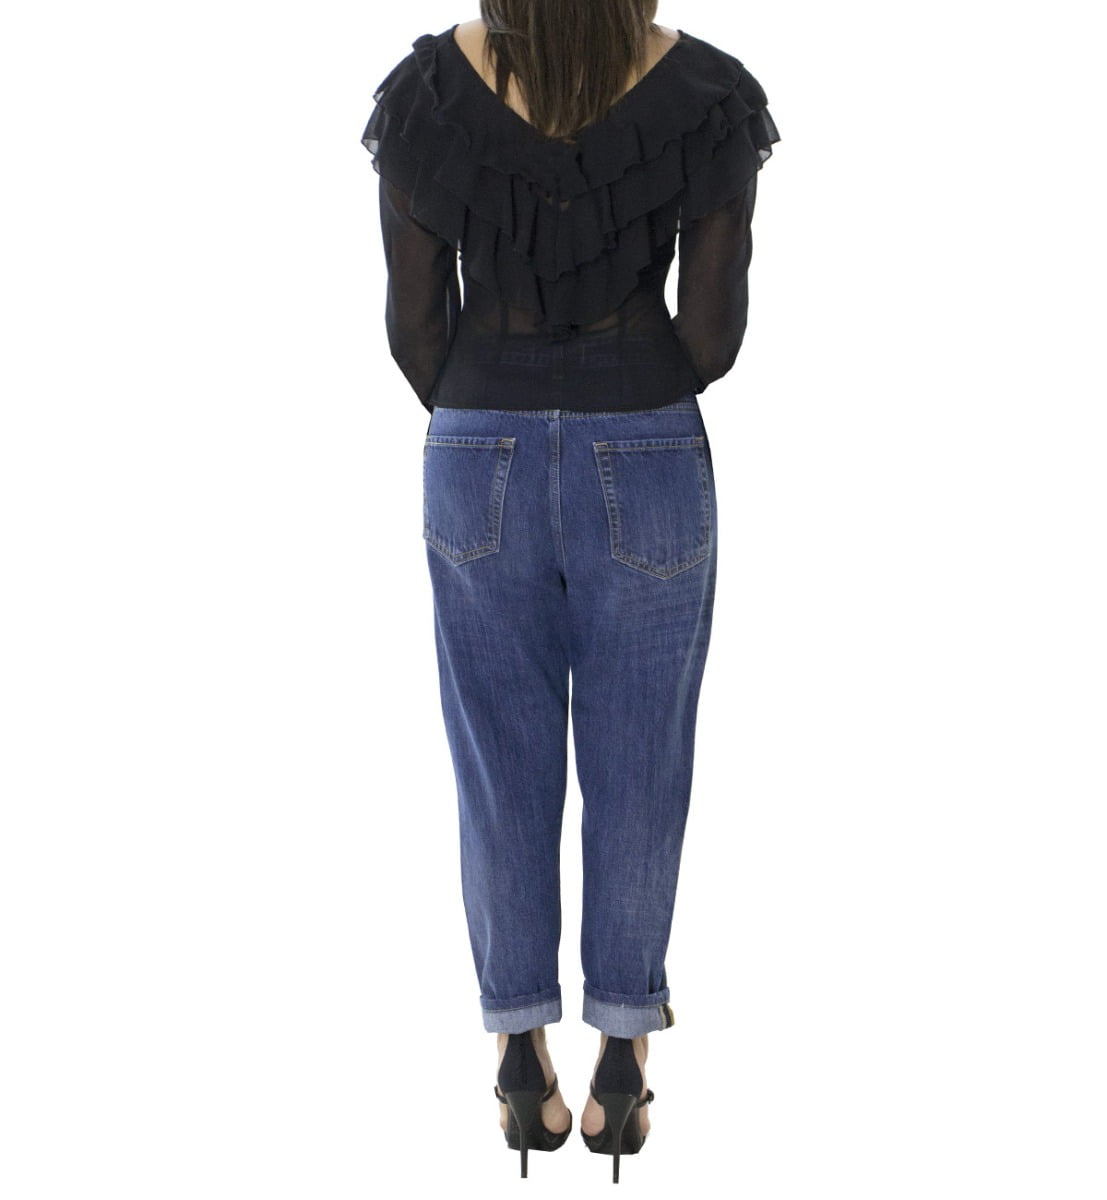 Jeans donna tessuto fisso lavaggio 2 sabbiato modello baggy 5 tasche